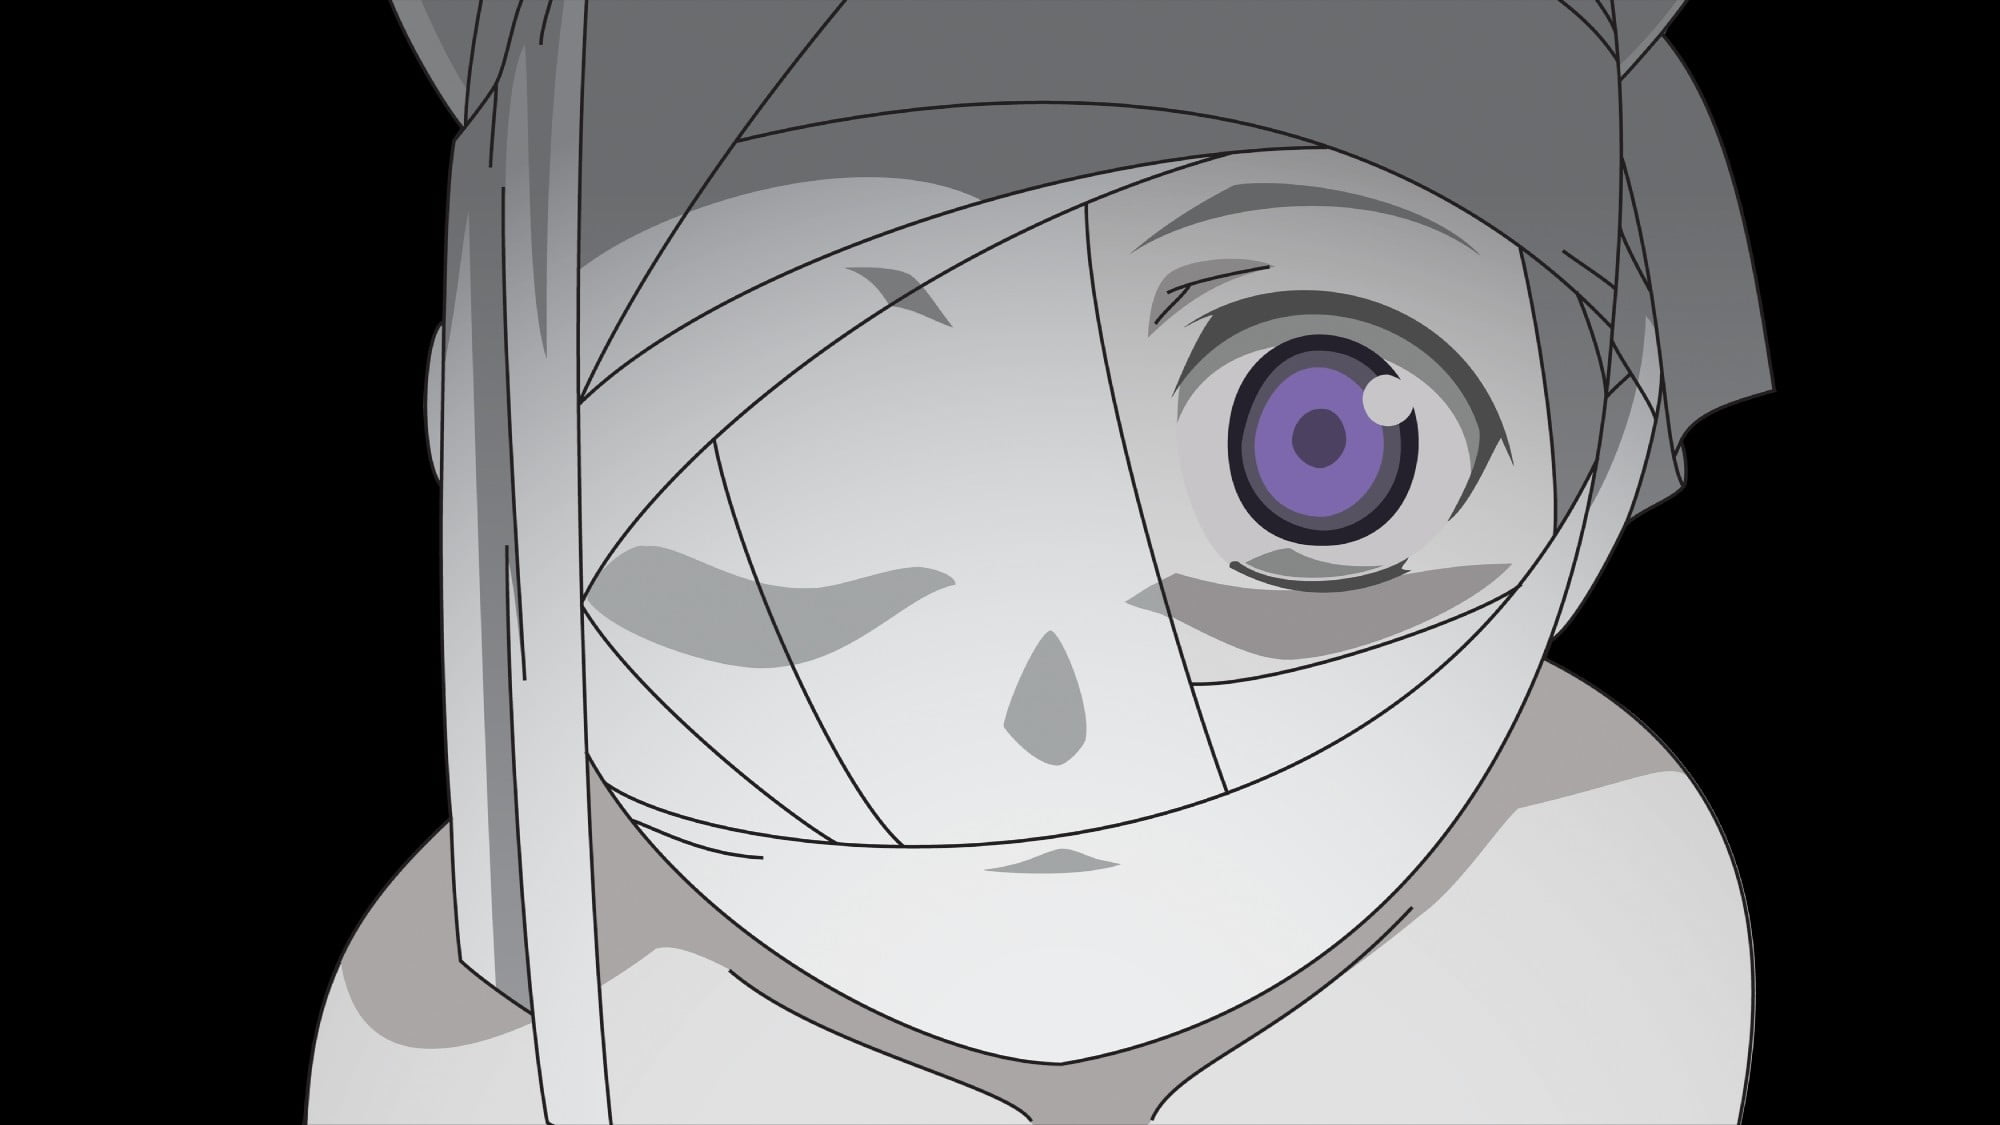 Anime girl with bandage on eye Images Photos  AniYukicom